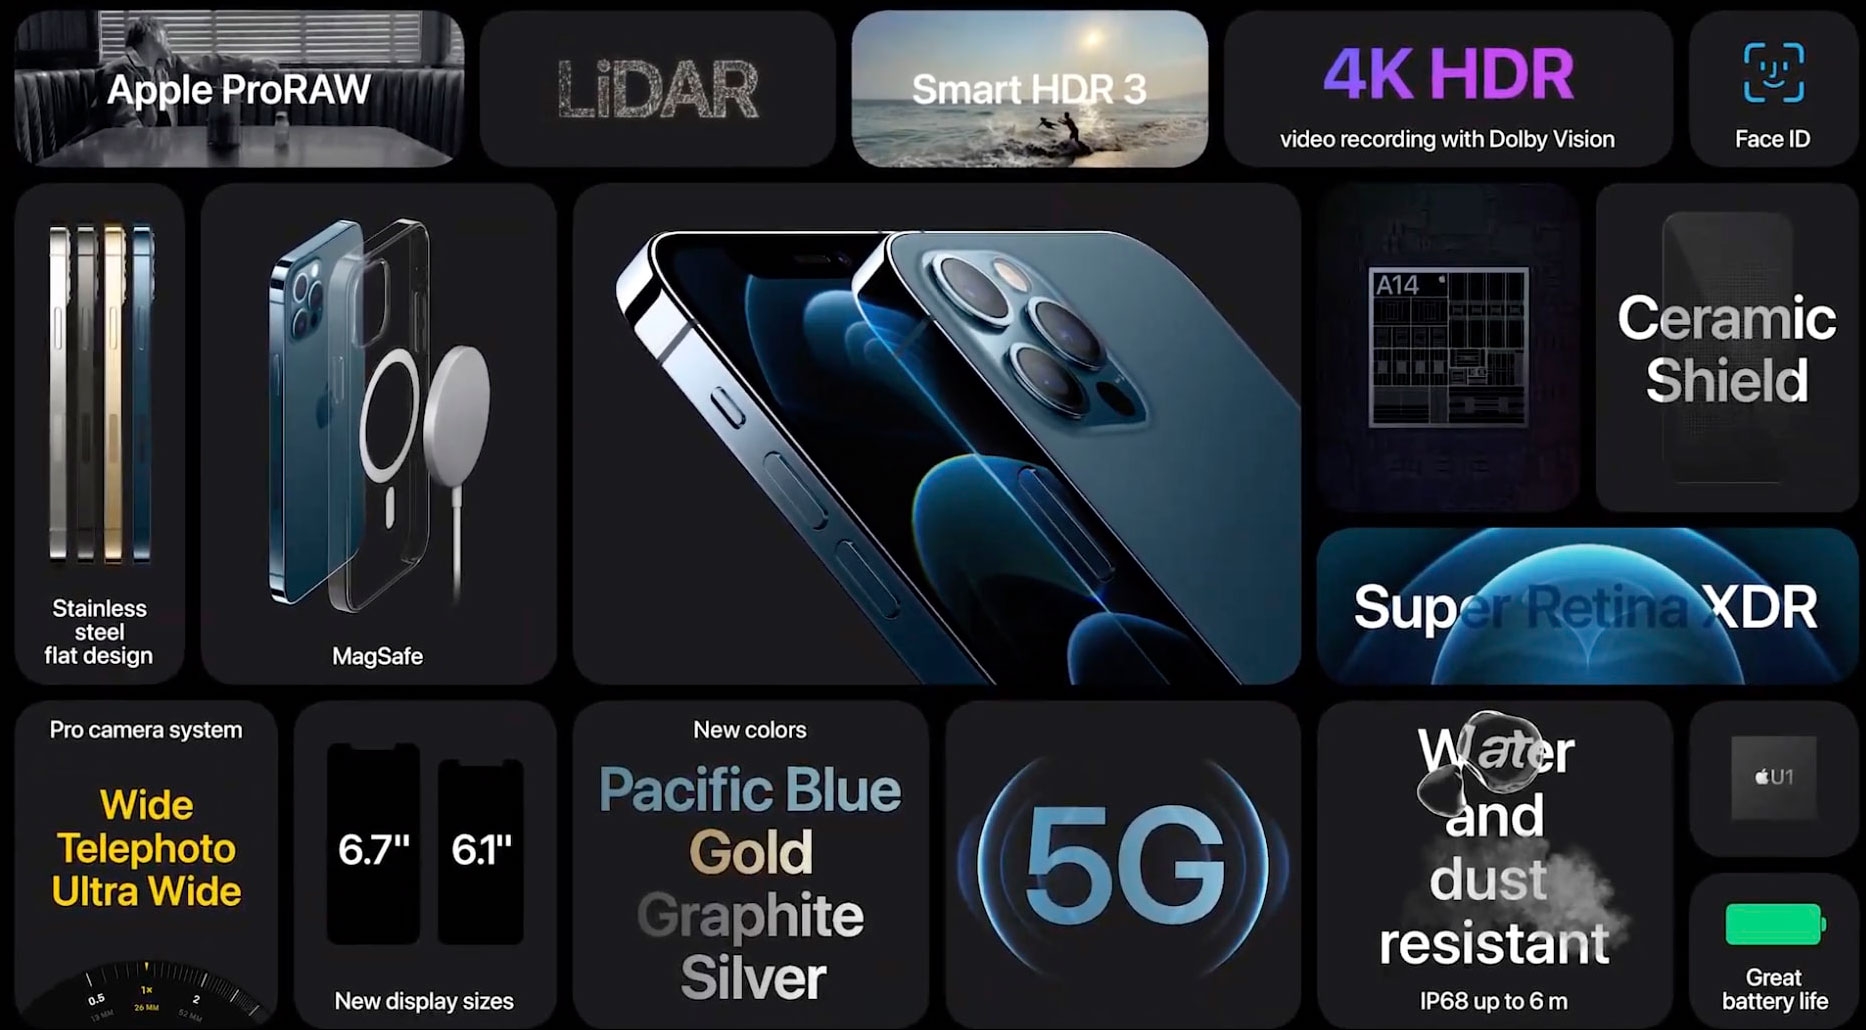 المميزات الرئيسية لأيفون 12 (iPhone 12)